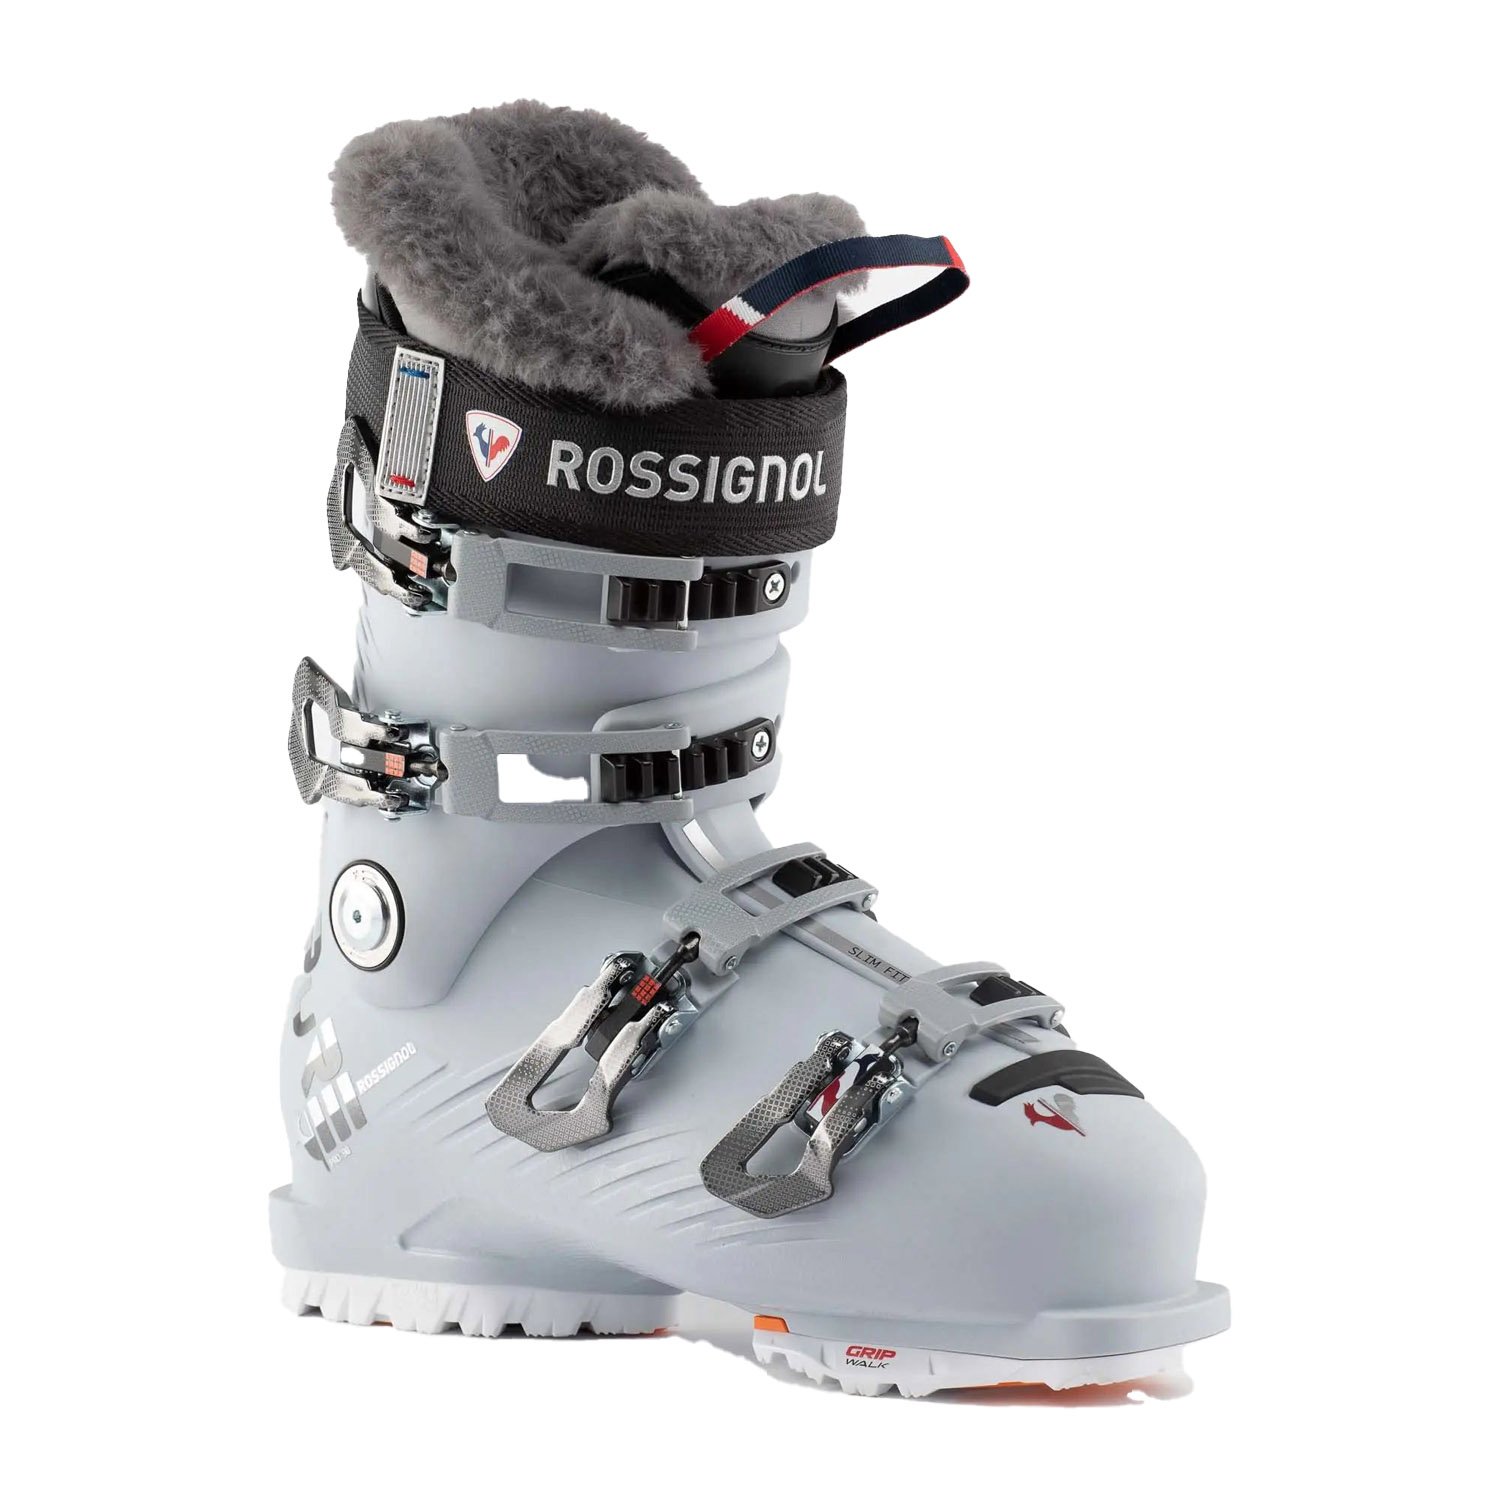 Rossignol Pure 90 Pro Kayak Ayakkabısı - Renkli - 1